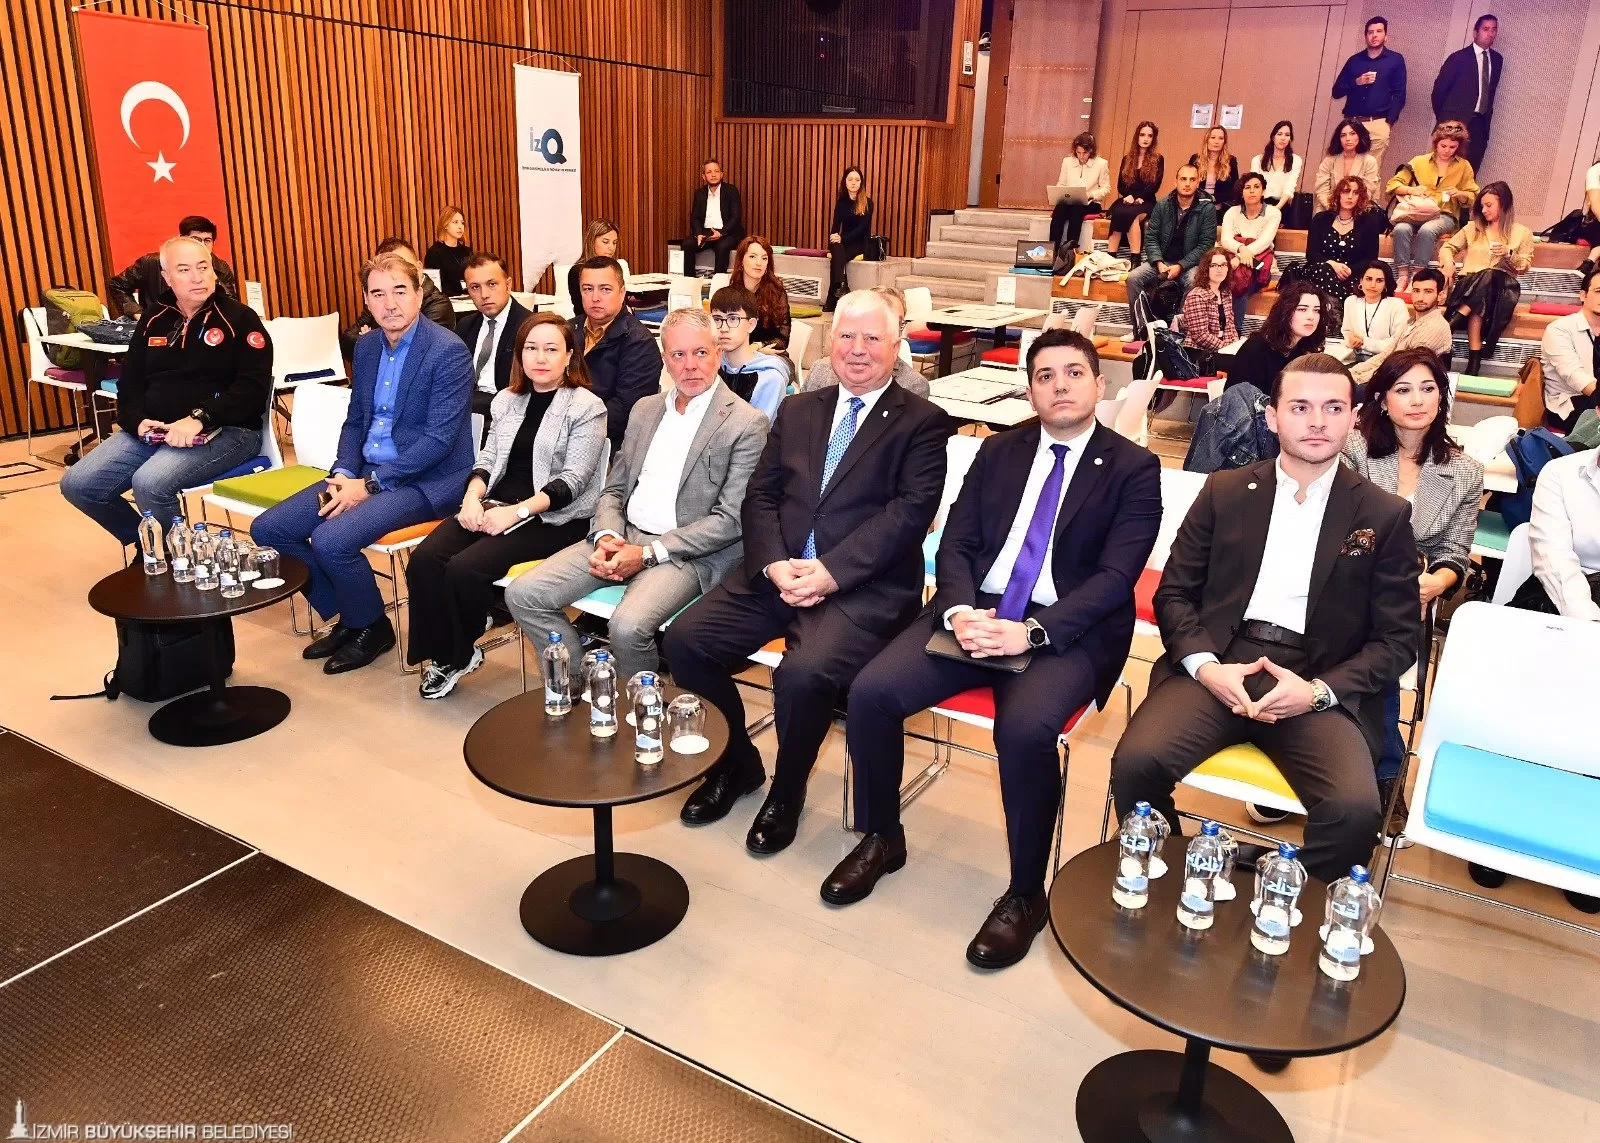 İzmir'de düzenlenen IDEATHON etkinliği, afet öncesi, sırası ve sonrasında kullanılacak teknolojik çözümler için genç girişimcileri bir araya getiriyor. 